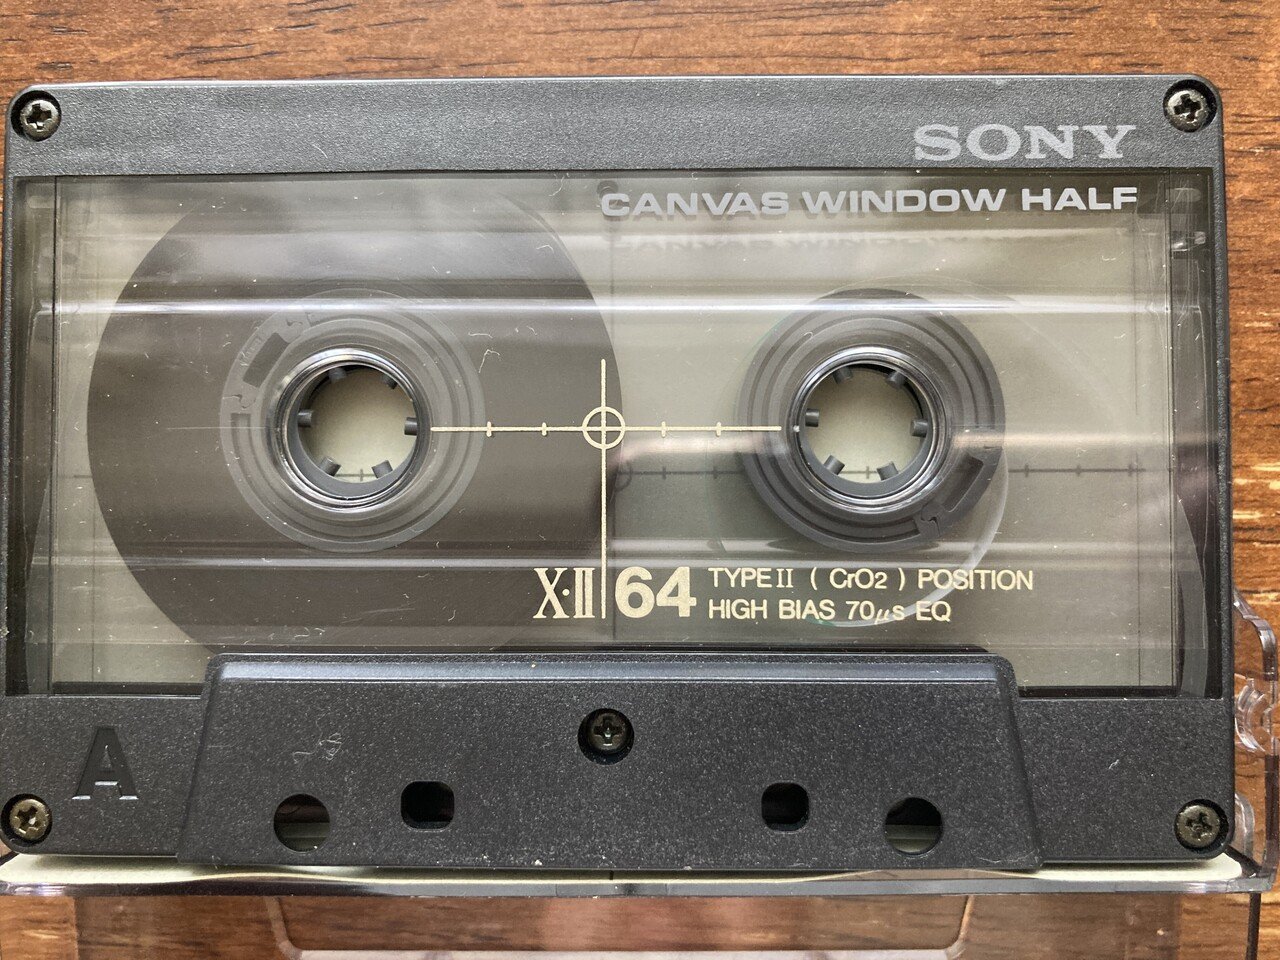 GIZA 初期アーティスト メジャーデビュー前 アナログ、カセットテープ